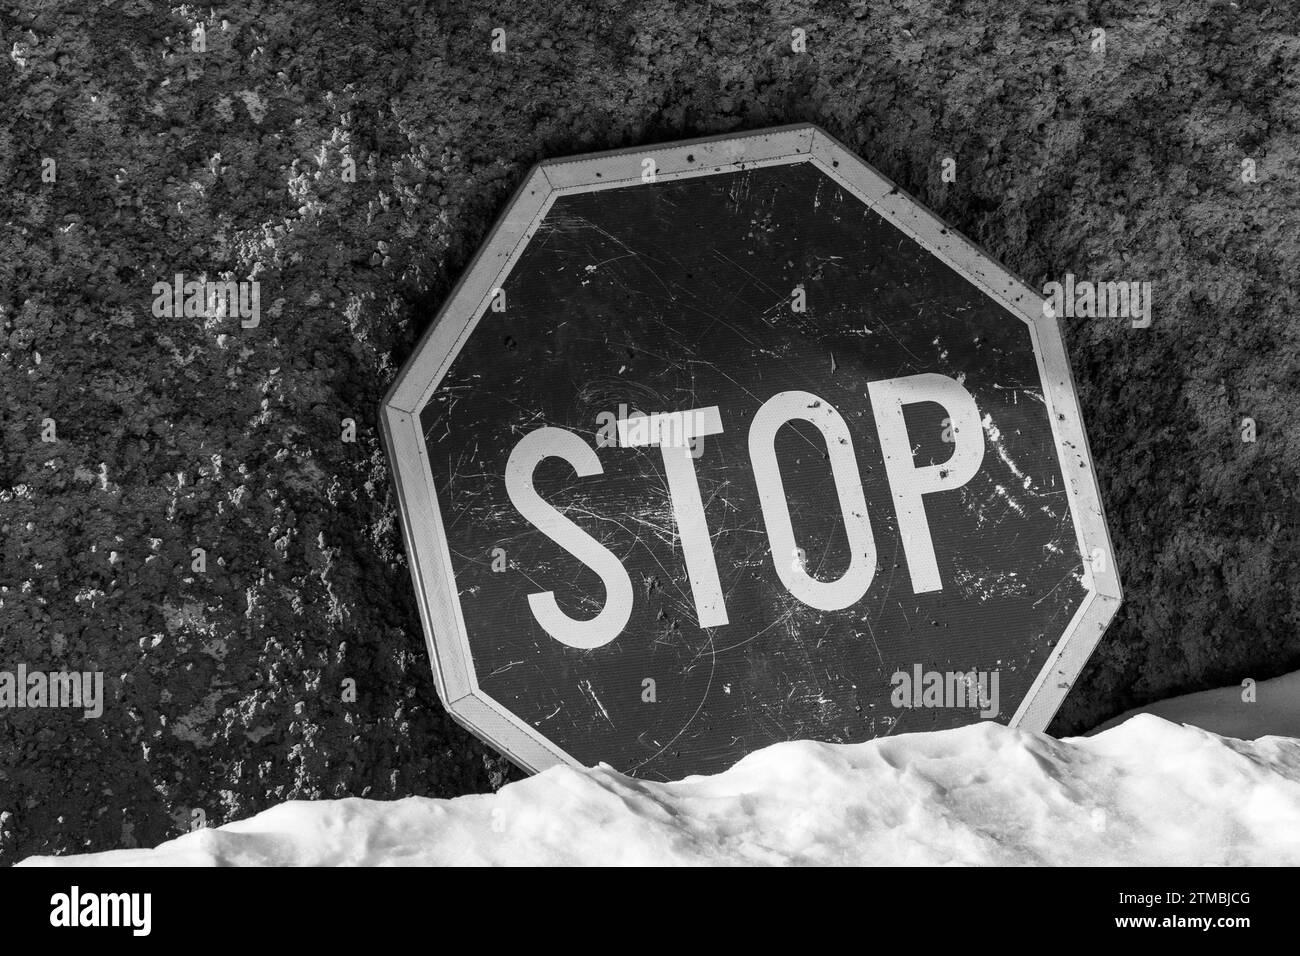 Stop , panneau de signalisation contre fond de mur de béton. Sol couvert de neige.couleurs noir et blanc. Informations. Monochrome. Banque D'Images